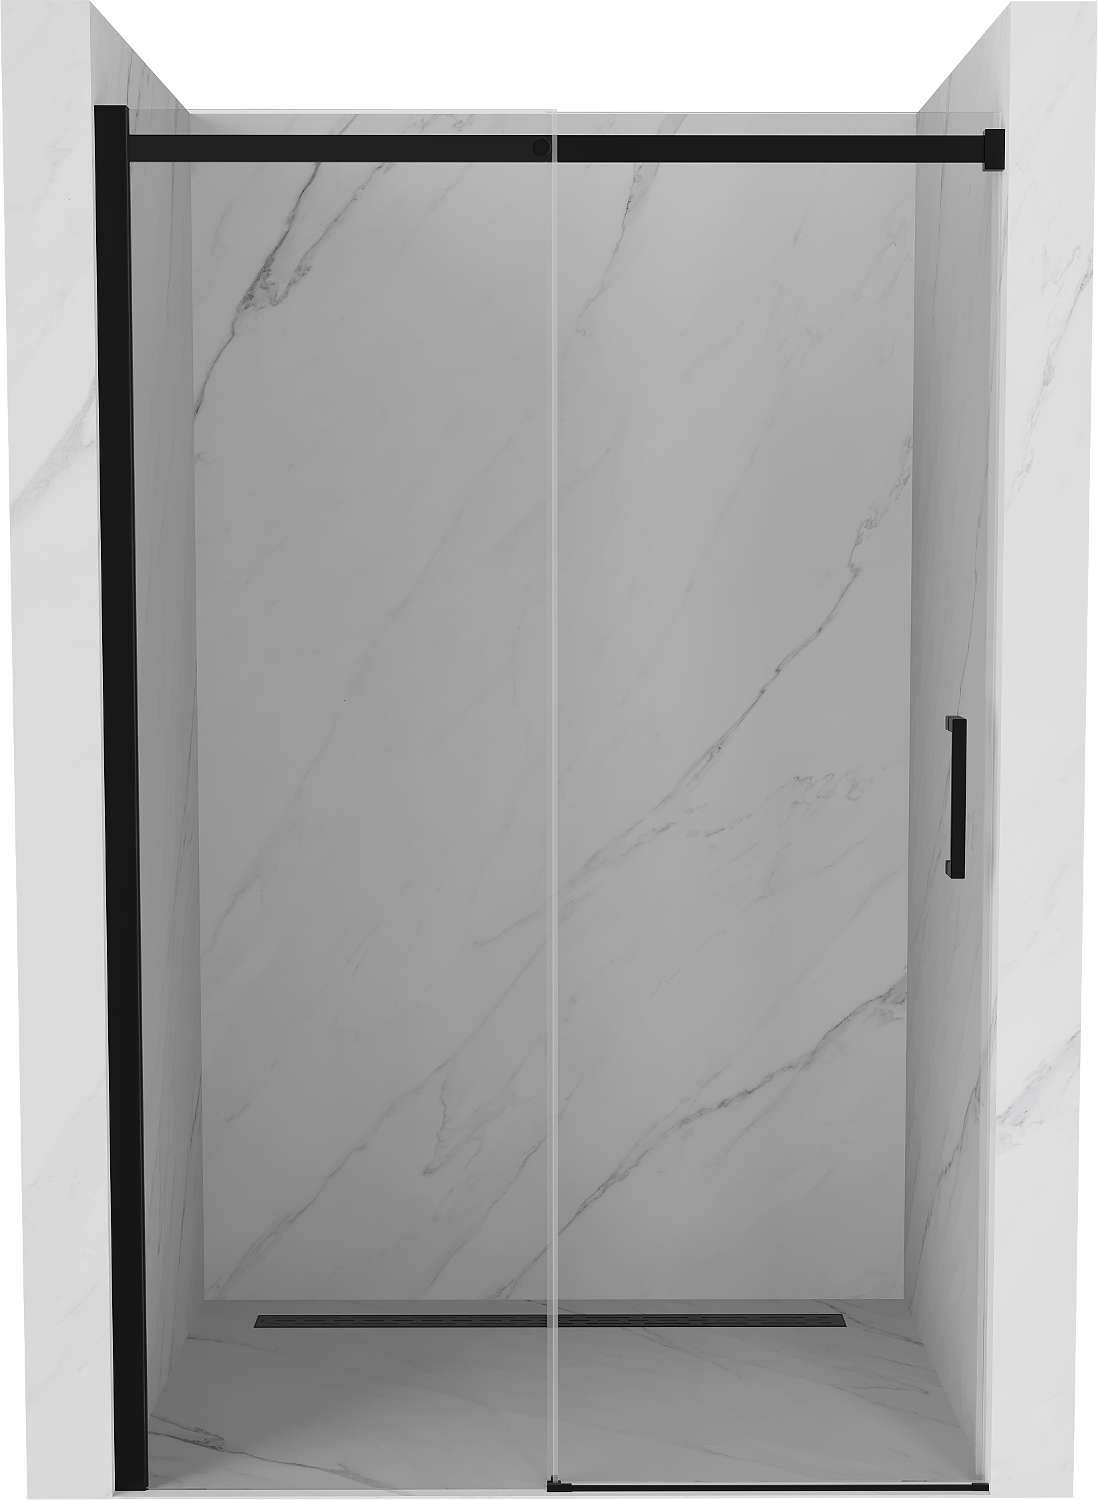 Mexen Omega drzwi prysznicowe rozsuwane 160 cm, transparent, czarne - 825-160-000-70-00